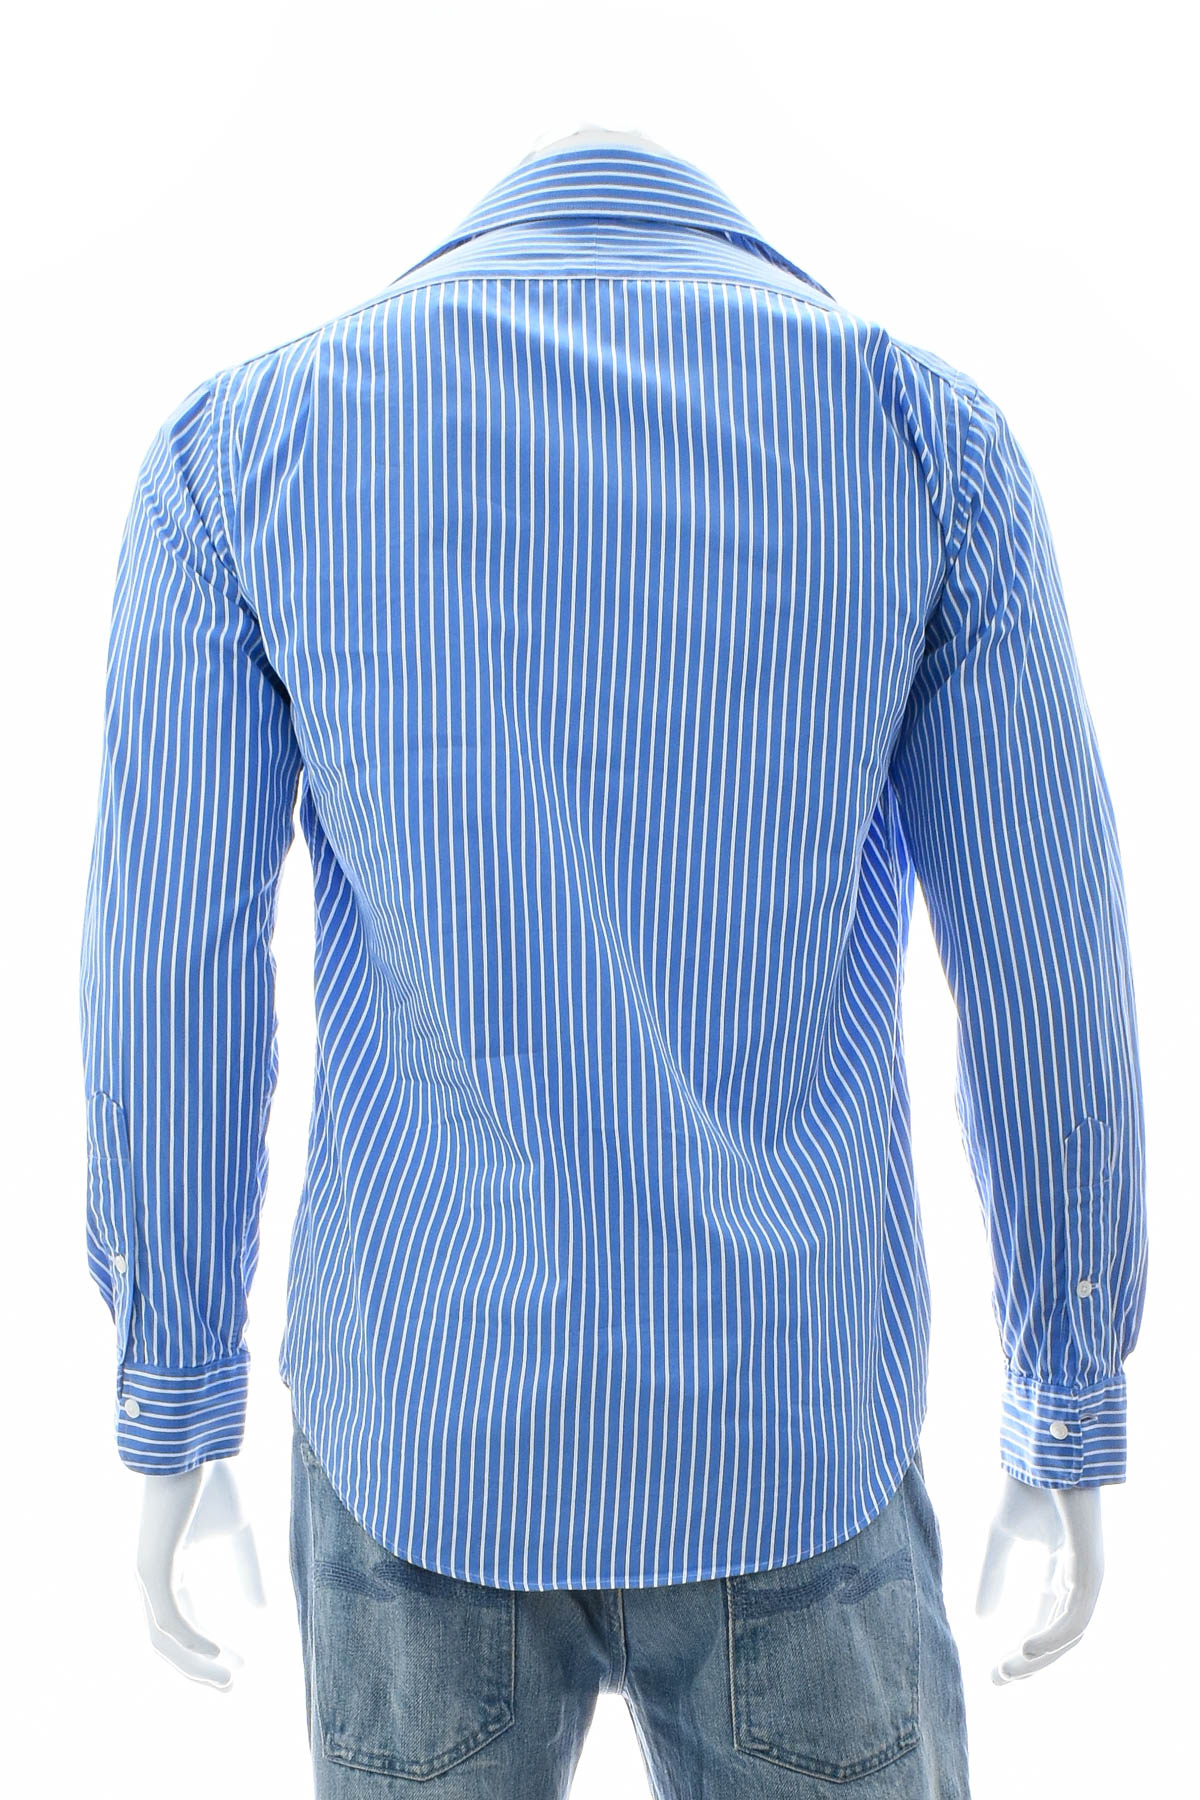 Ανδρικό πουκάμισο - POLO RALPH LAUREN - 1